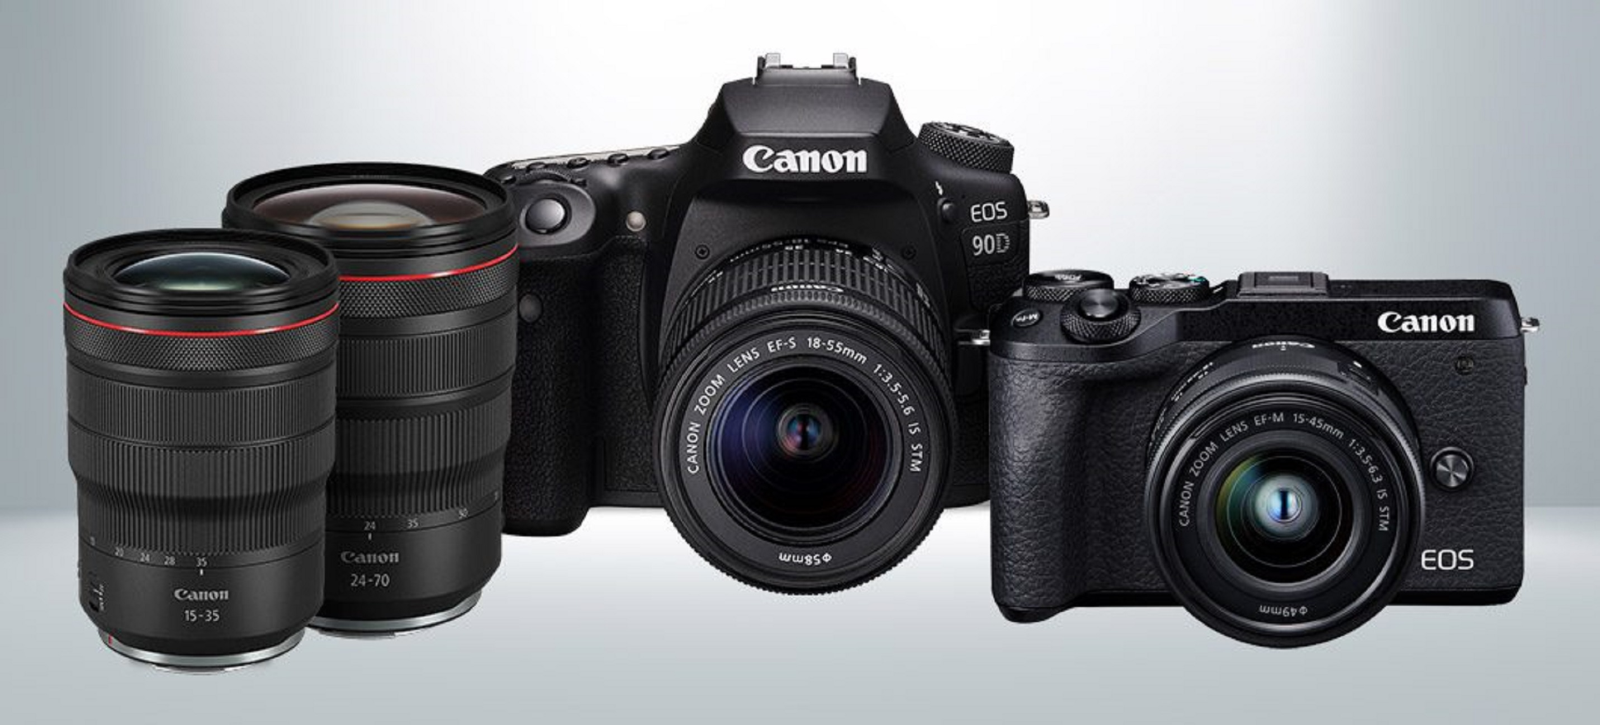 Canon chính thức trình làng bộ đôi máy ảnh DSLR EOS 90D và mirrorless EOS M6 Mark II